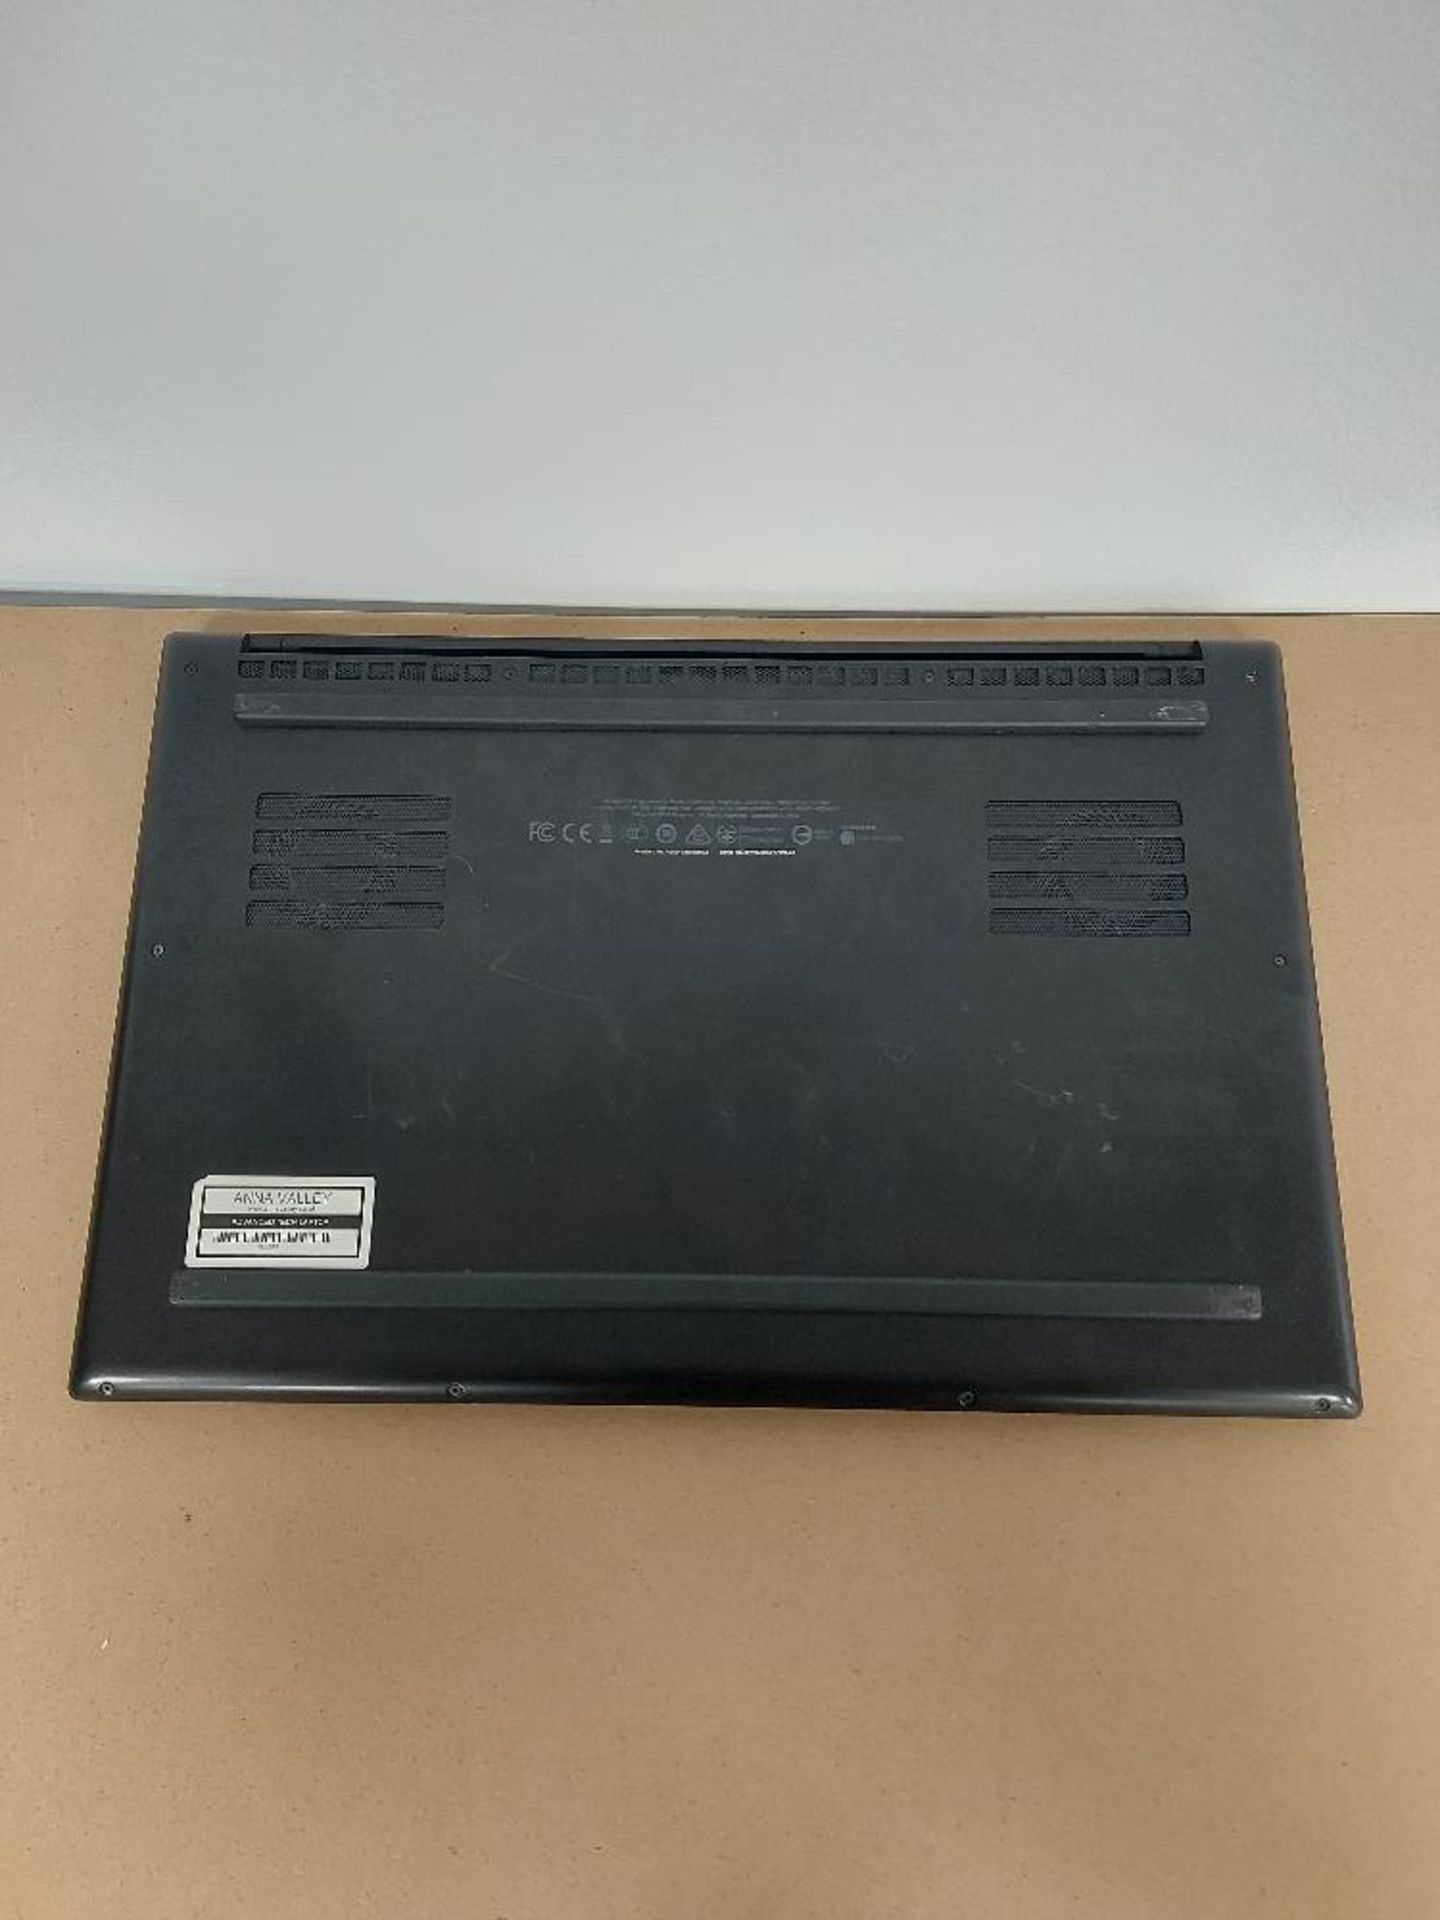 Razer RZ09-0301 Laptop - Image 4 of 6